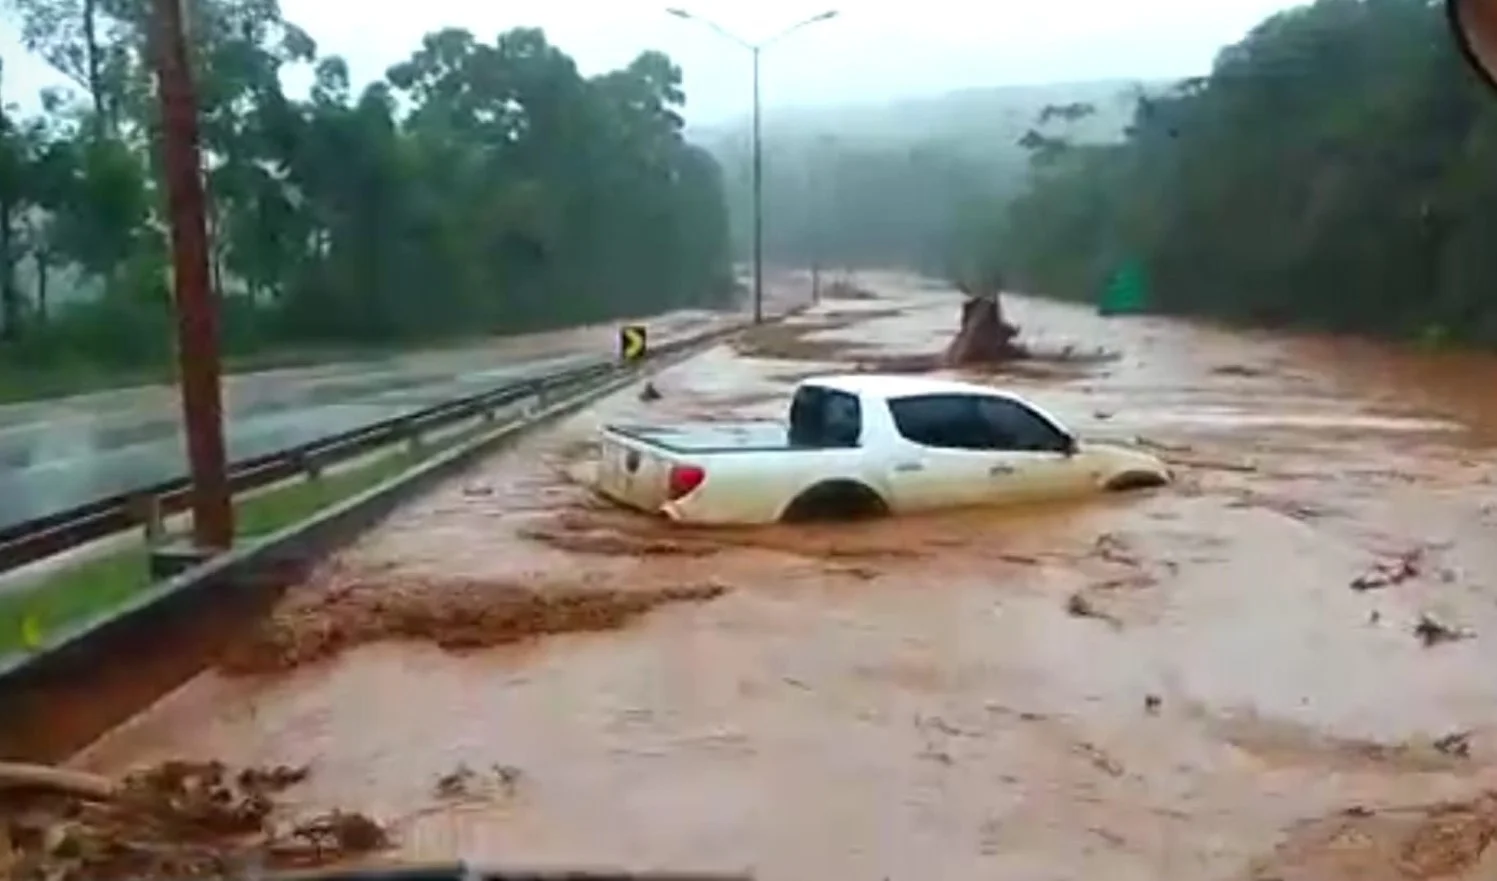 Dique de barragem de rejeito transborda, causa alagamentos e interdita rodovia em Minas Gerais